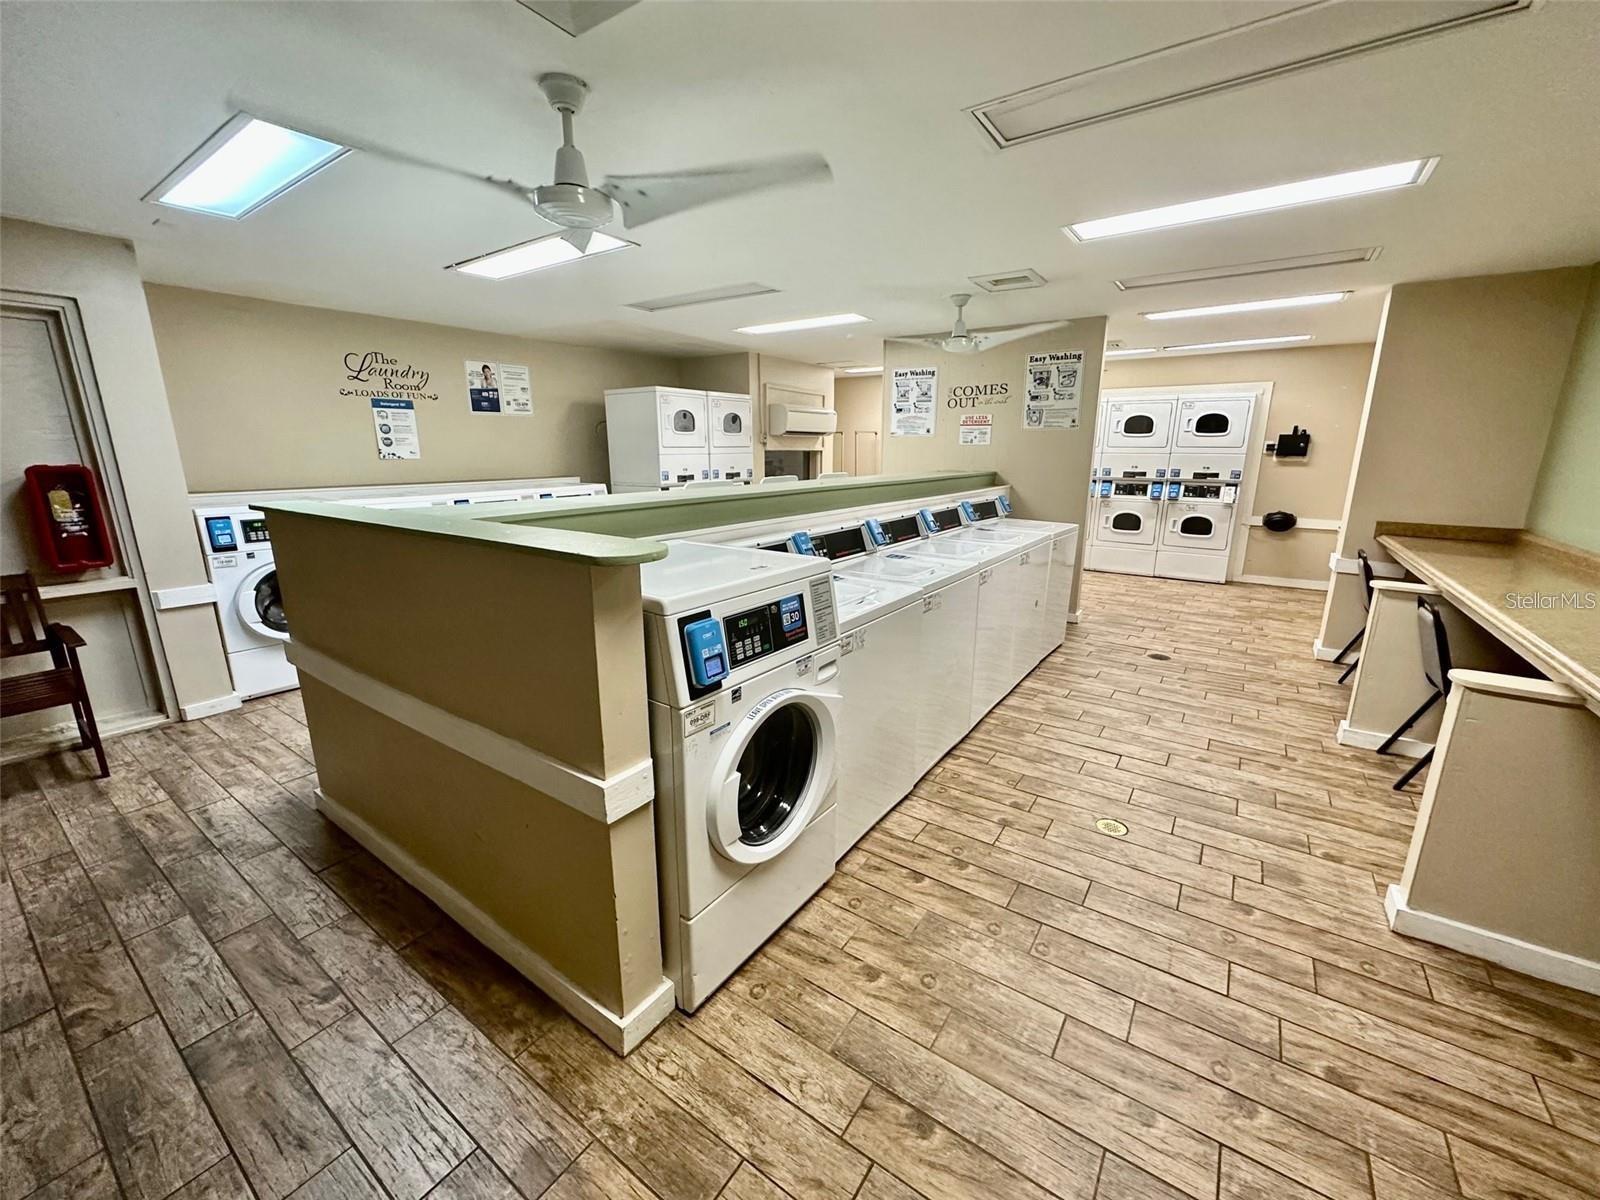 Community laundry facilities